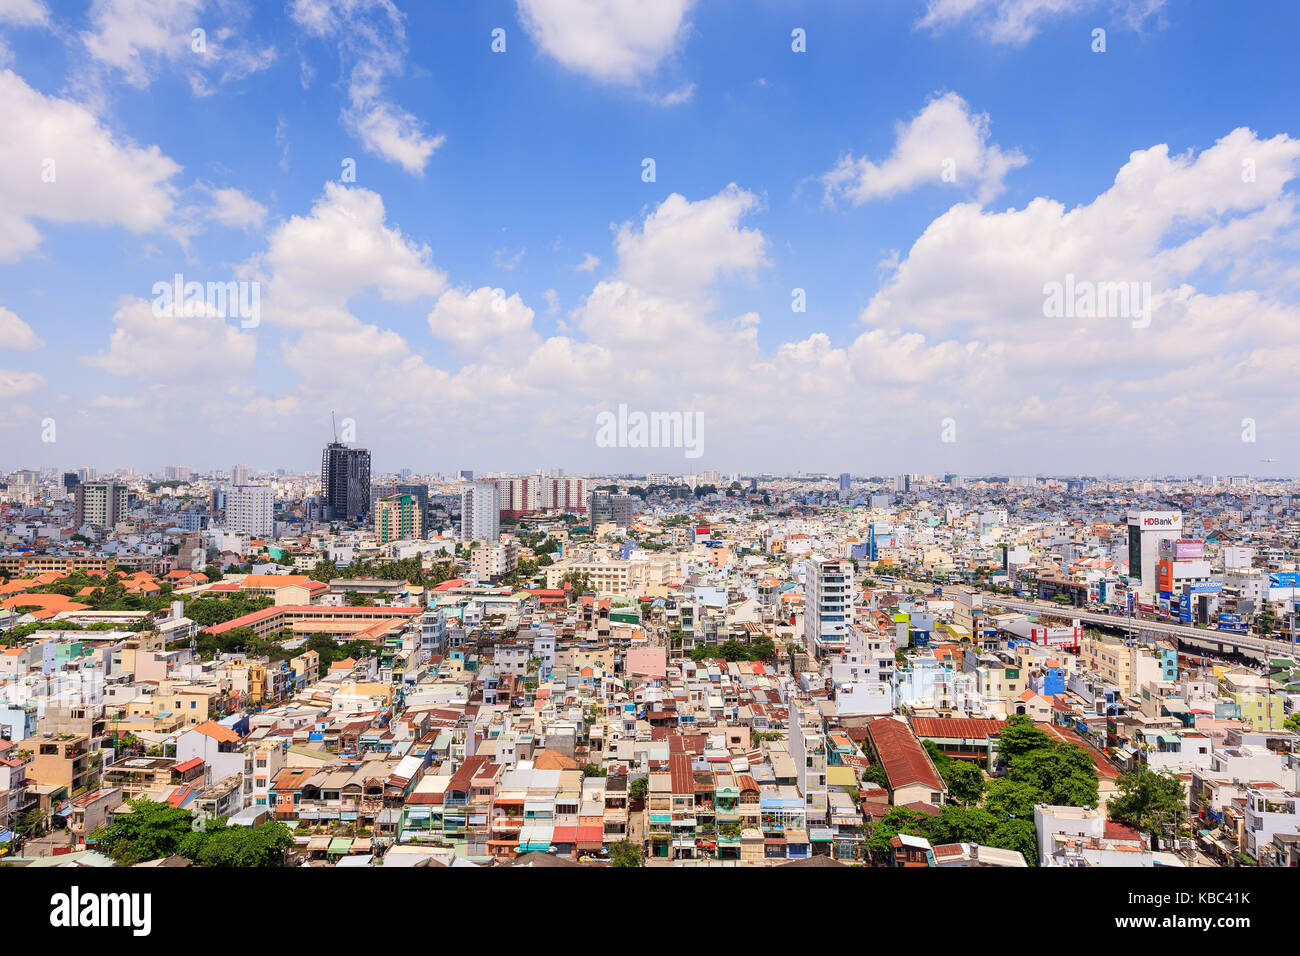 Vista panoramica della città di Ho Chi Minh (Saigon), Vietnam. Ho chi minh city è la città più grande e il centro economico in Vietnam Foto Stock